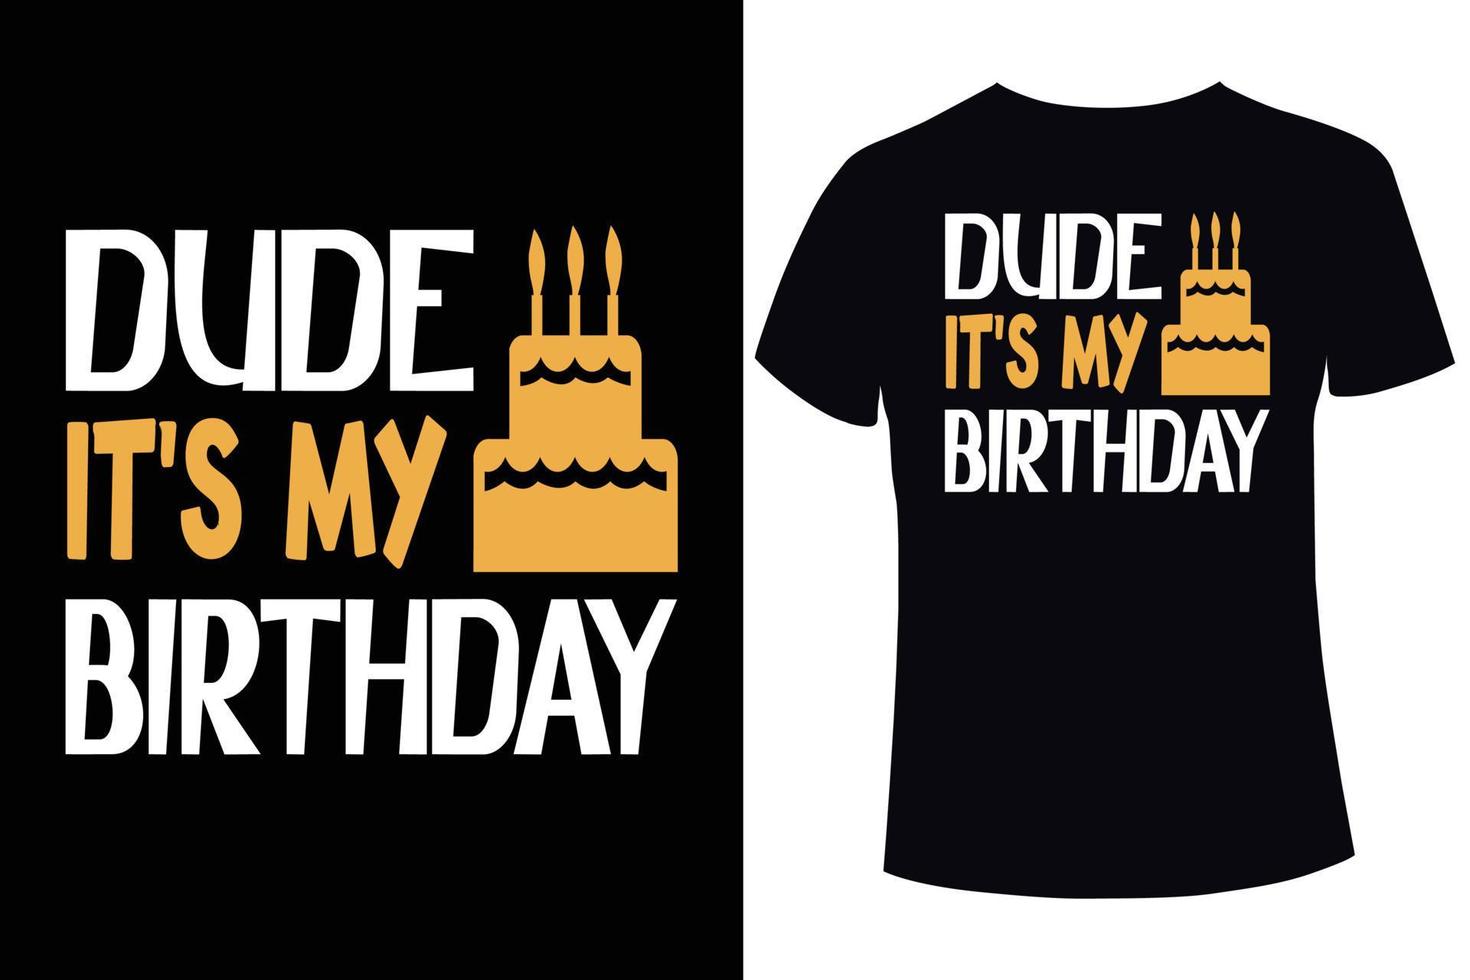 cara, é meu modelo de design de camiseta de aniversário vetor